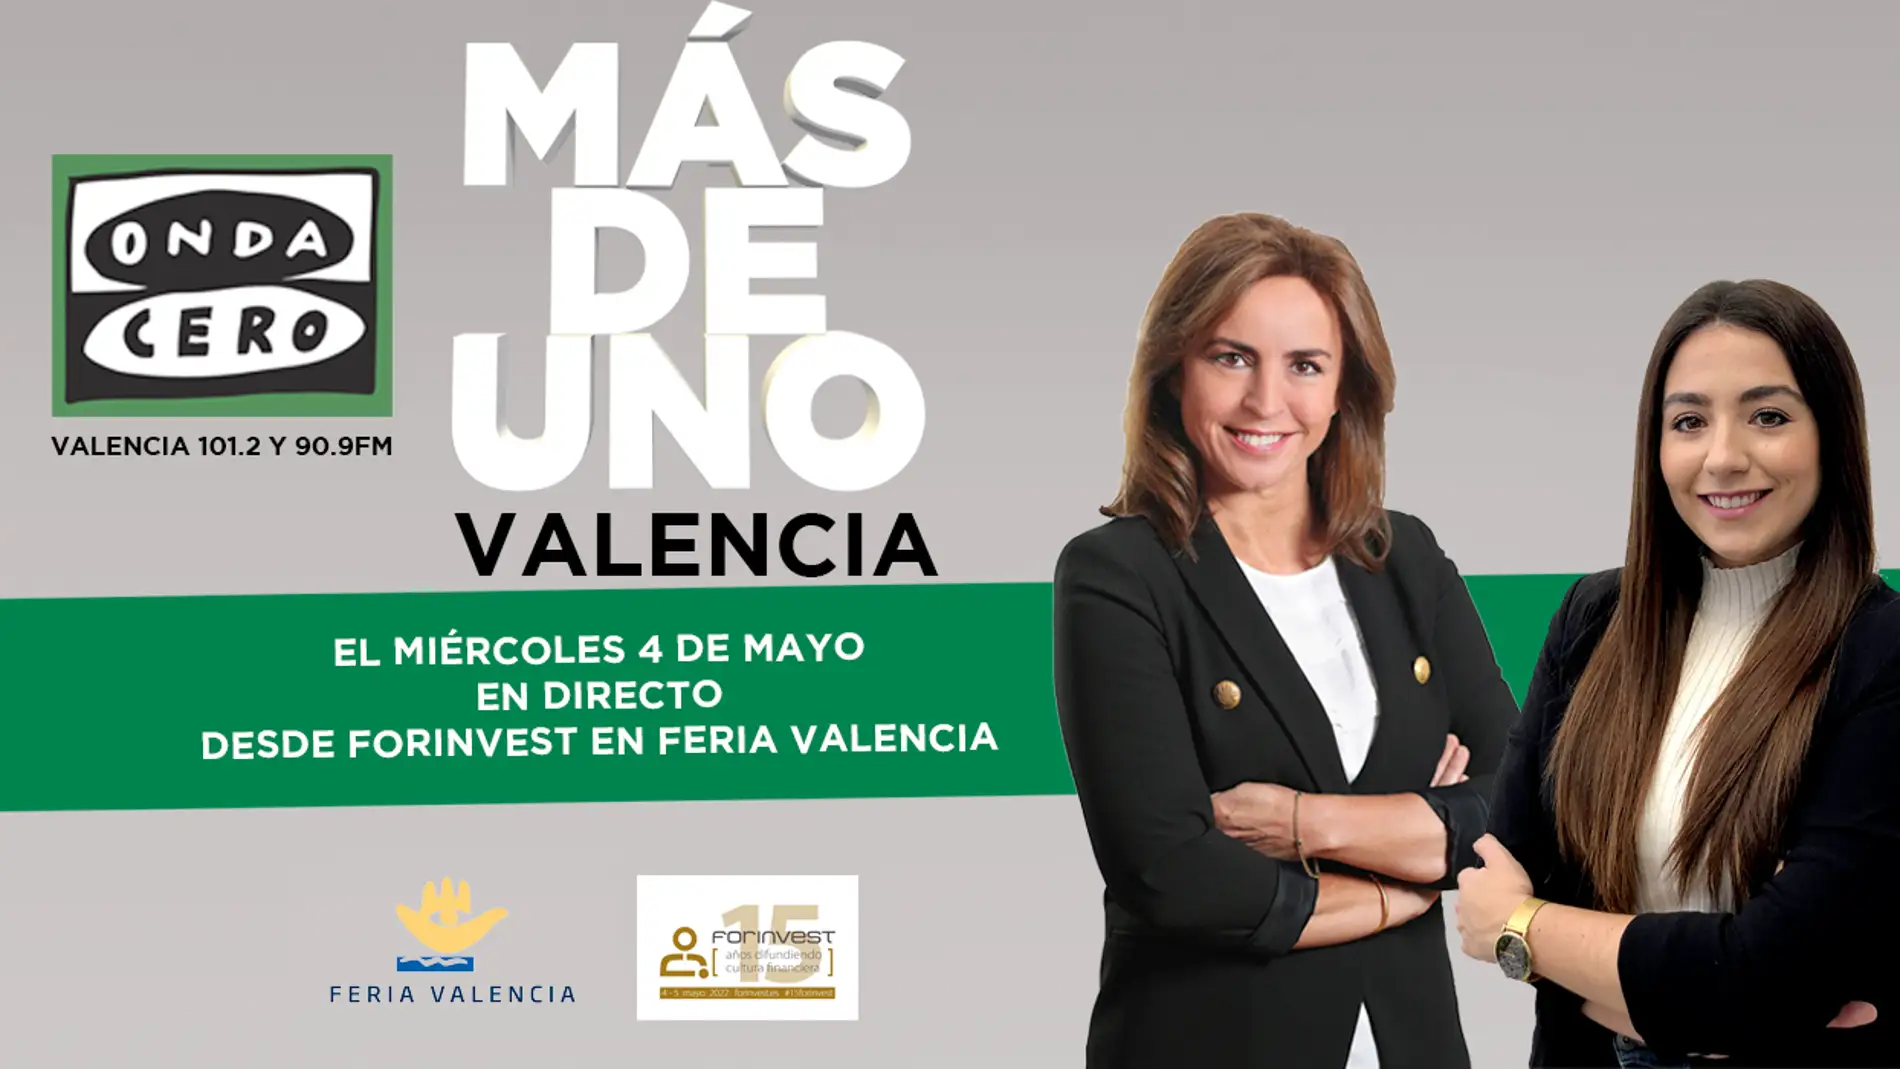 Más de Uno Valencia en directo desde Forinvest